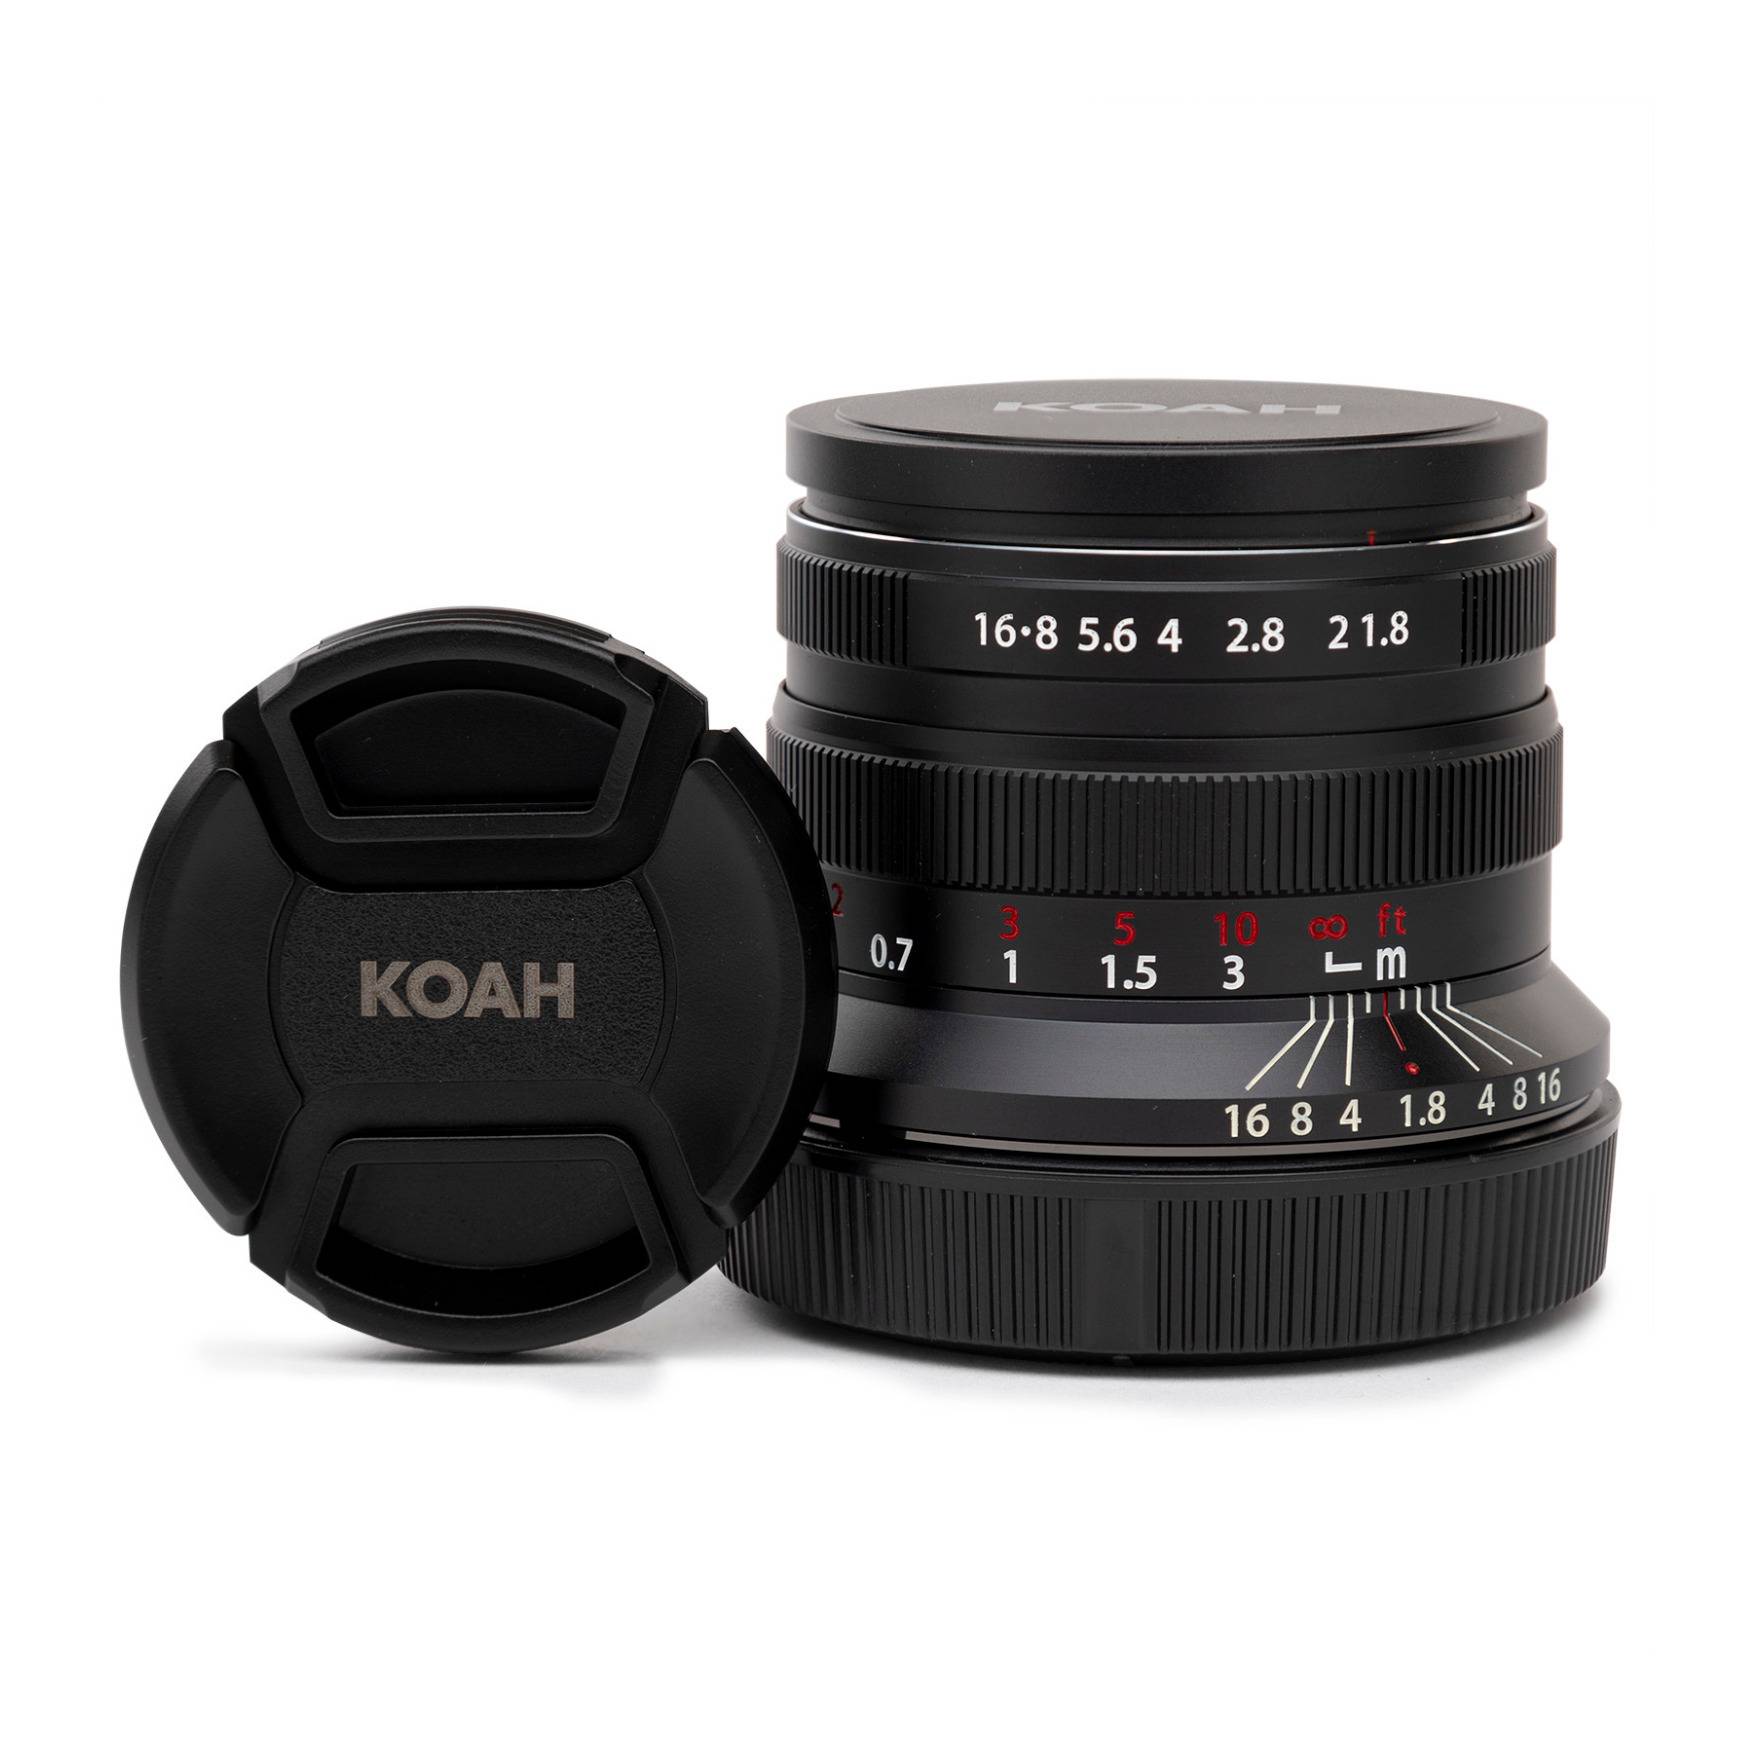 Koah Artisans Series 55mm f/1.8 Large Aperture Manual Focus Lens for Sony E (Black)